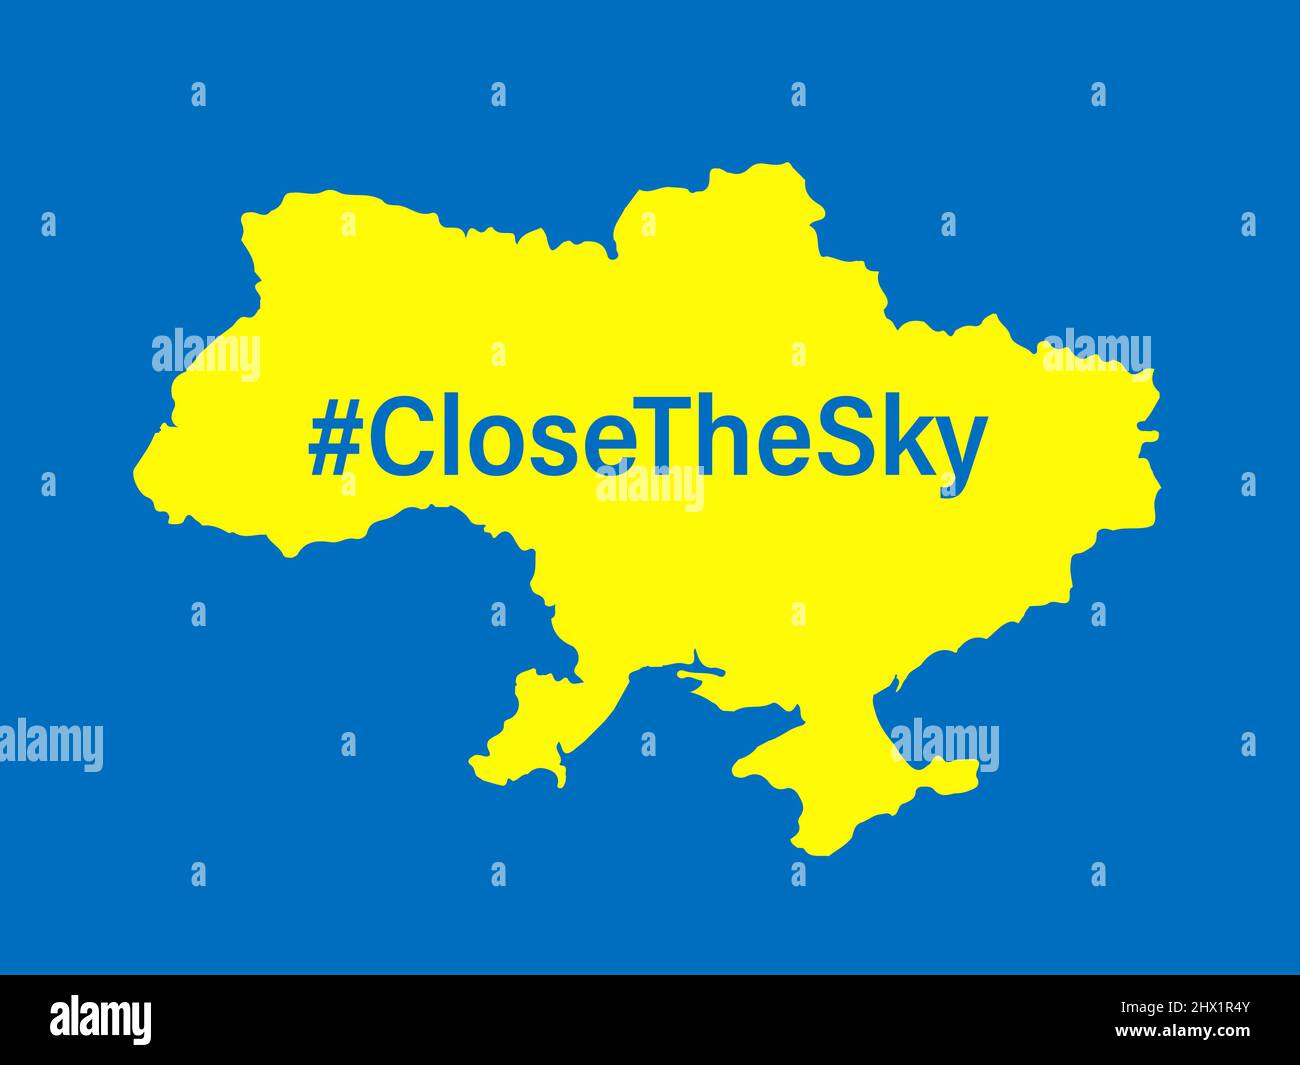 Chiudere il cielo sopra il banner della mappa grafica Ucraina. Nessuna zona di volo sull'Ucraina. Illustrazione vettoriale concettuale Illustrazione Vettoriale